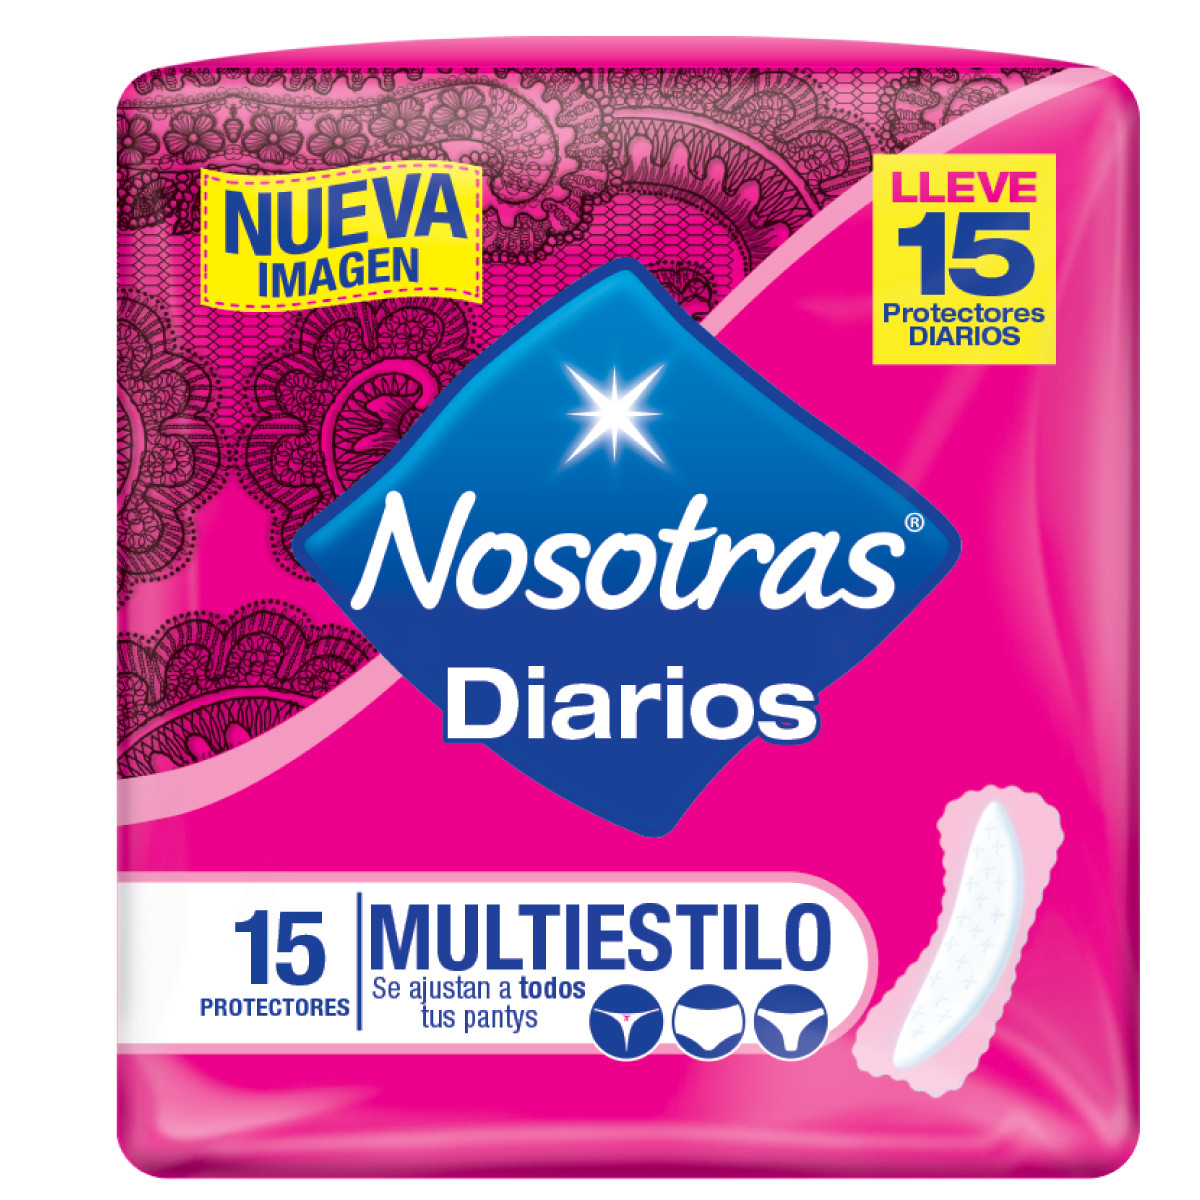 Imagen Protectores Diarios Nosotras Multiestilo x 15und 1